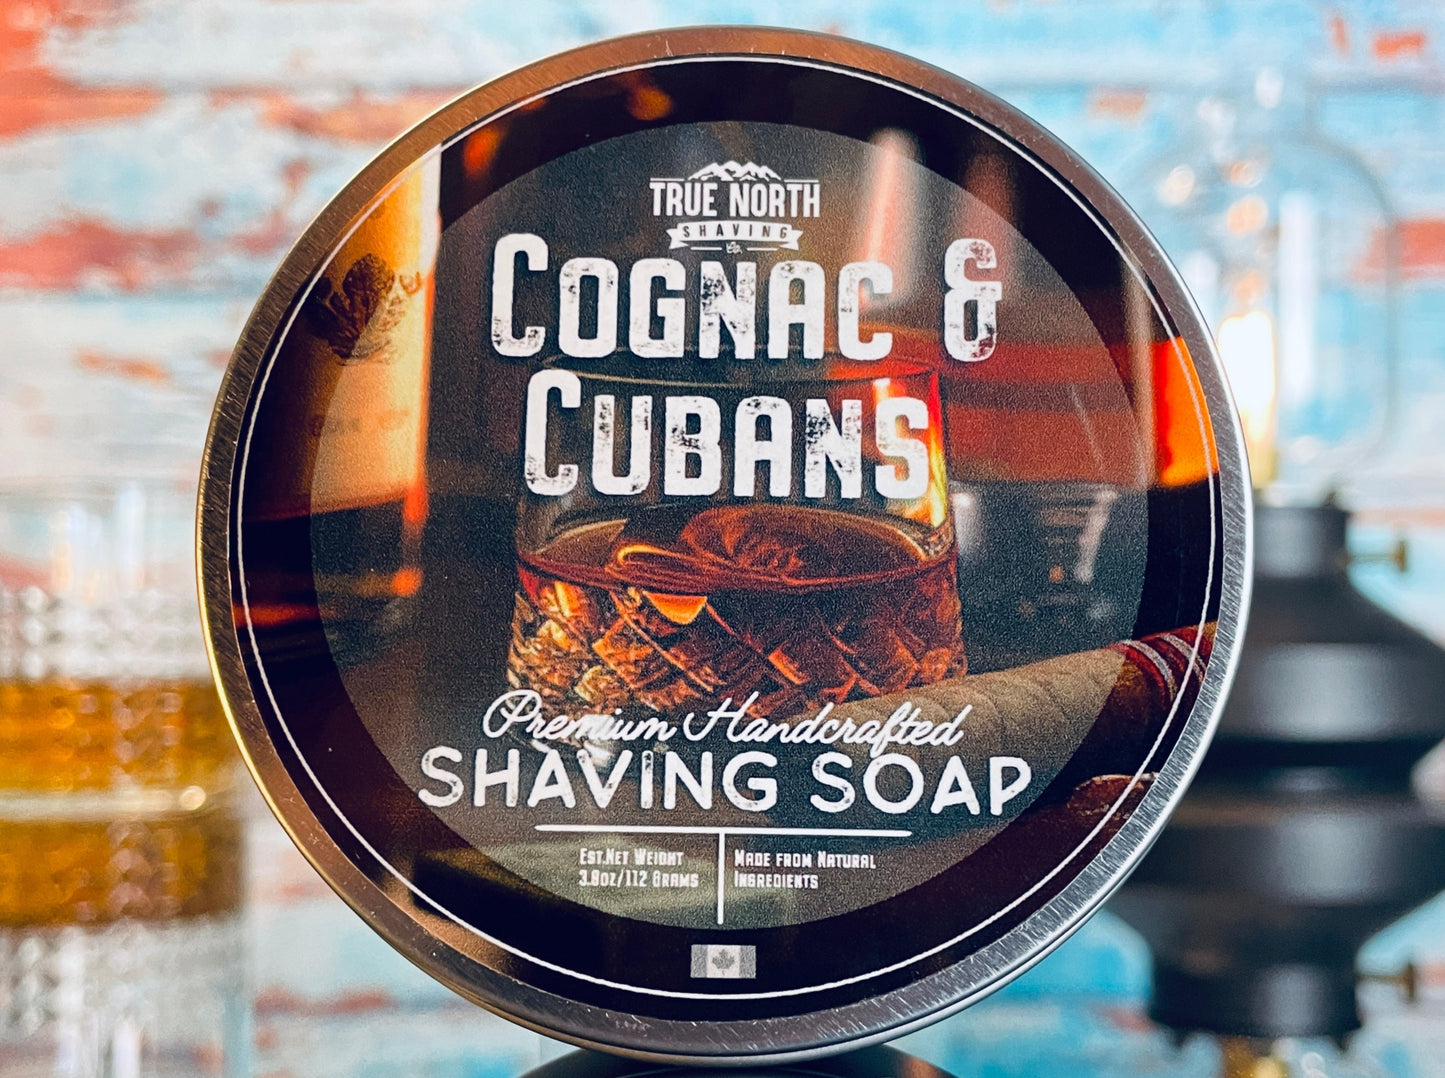 True North Shaving Soap